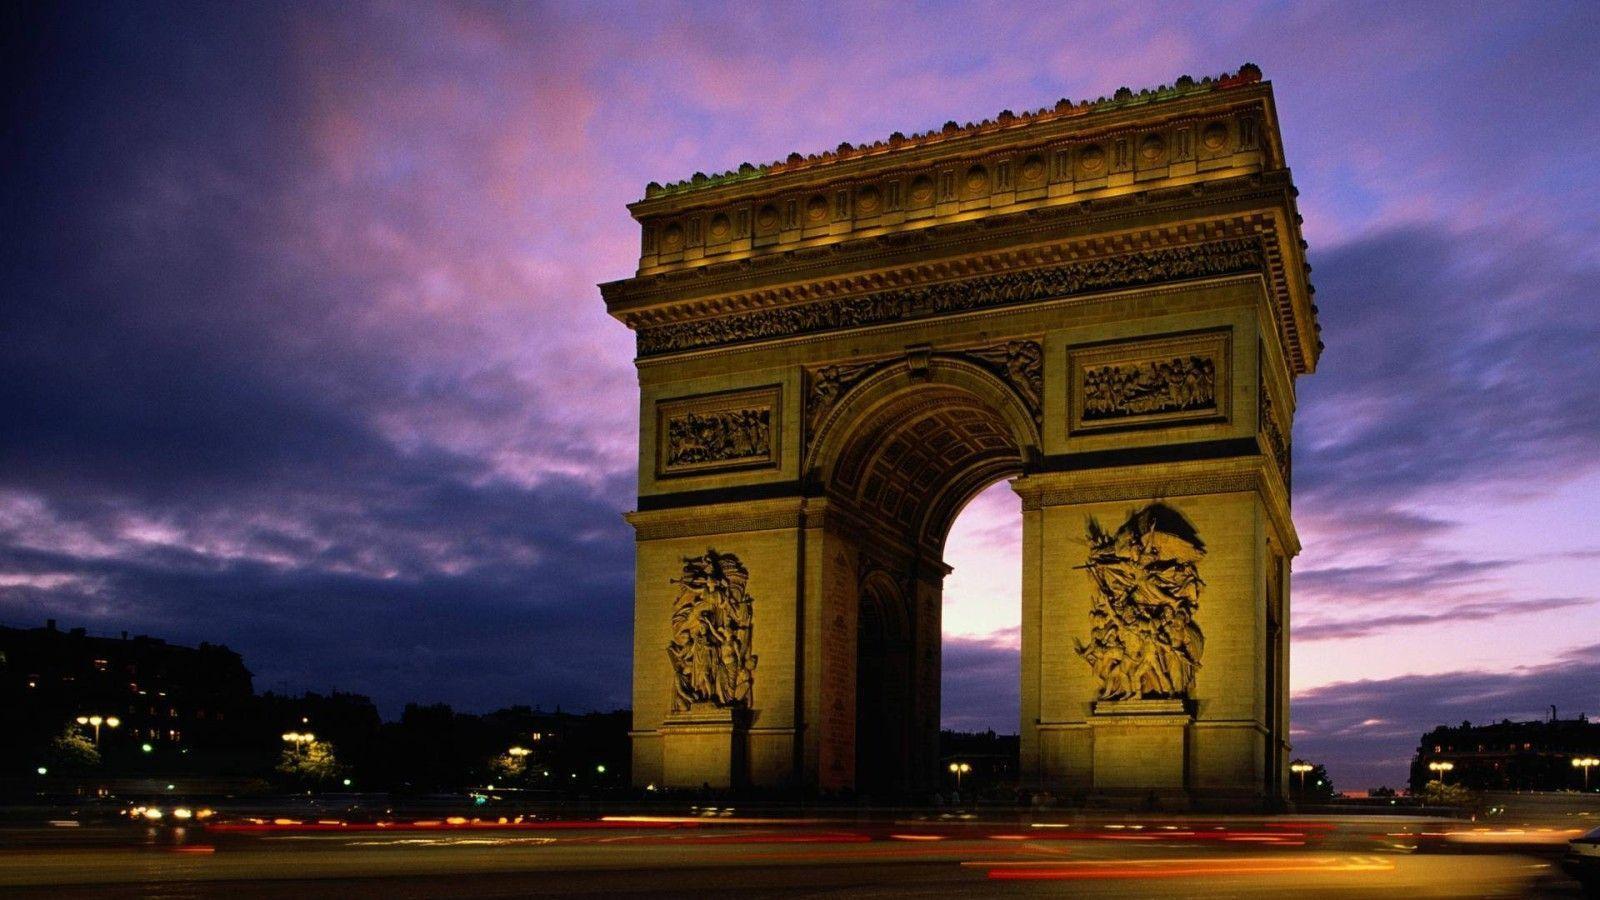 Hd Wallpapers Larc De Triomphe Paris France Wide 1600x900PX ~ Paris